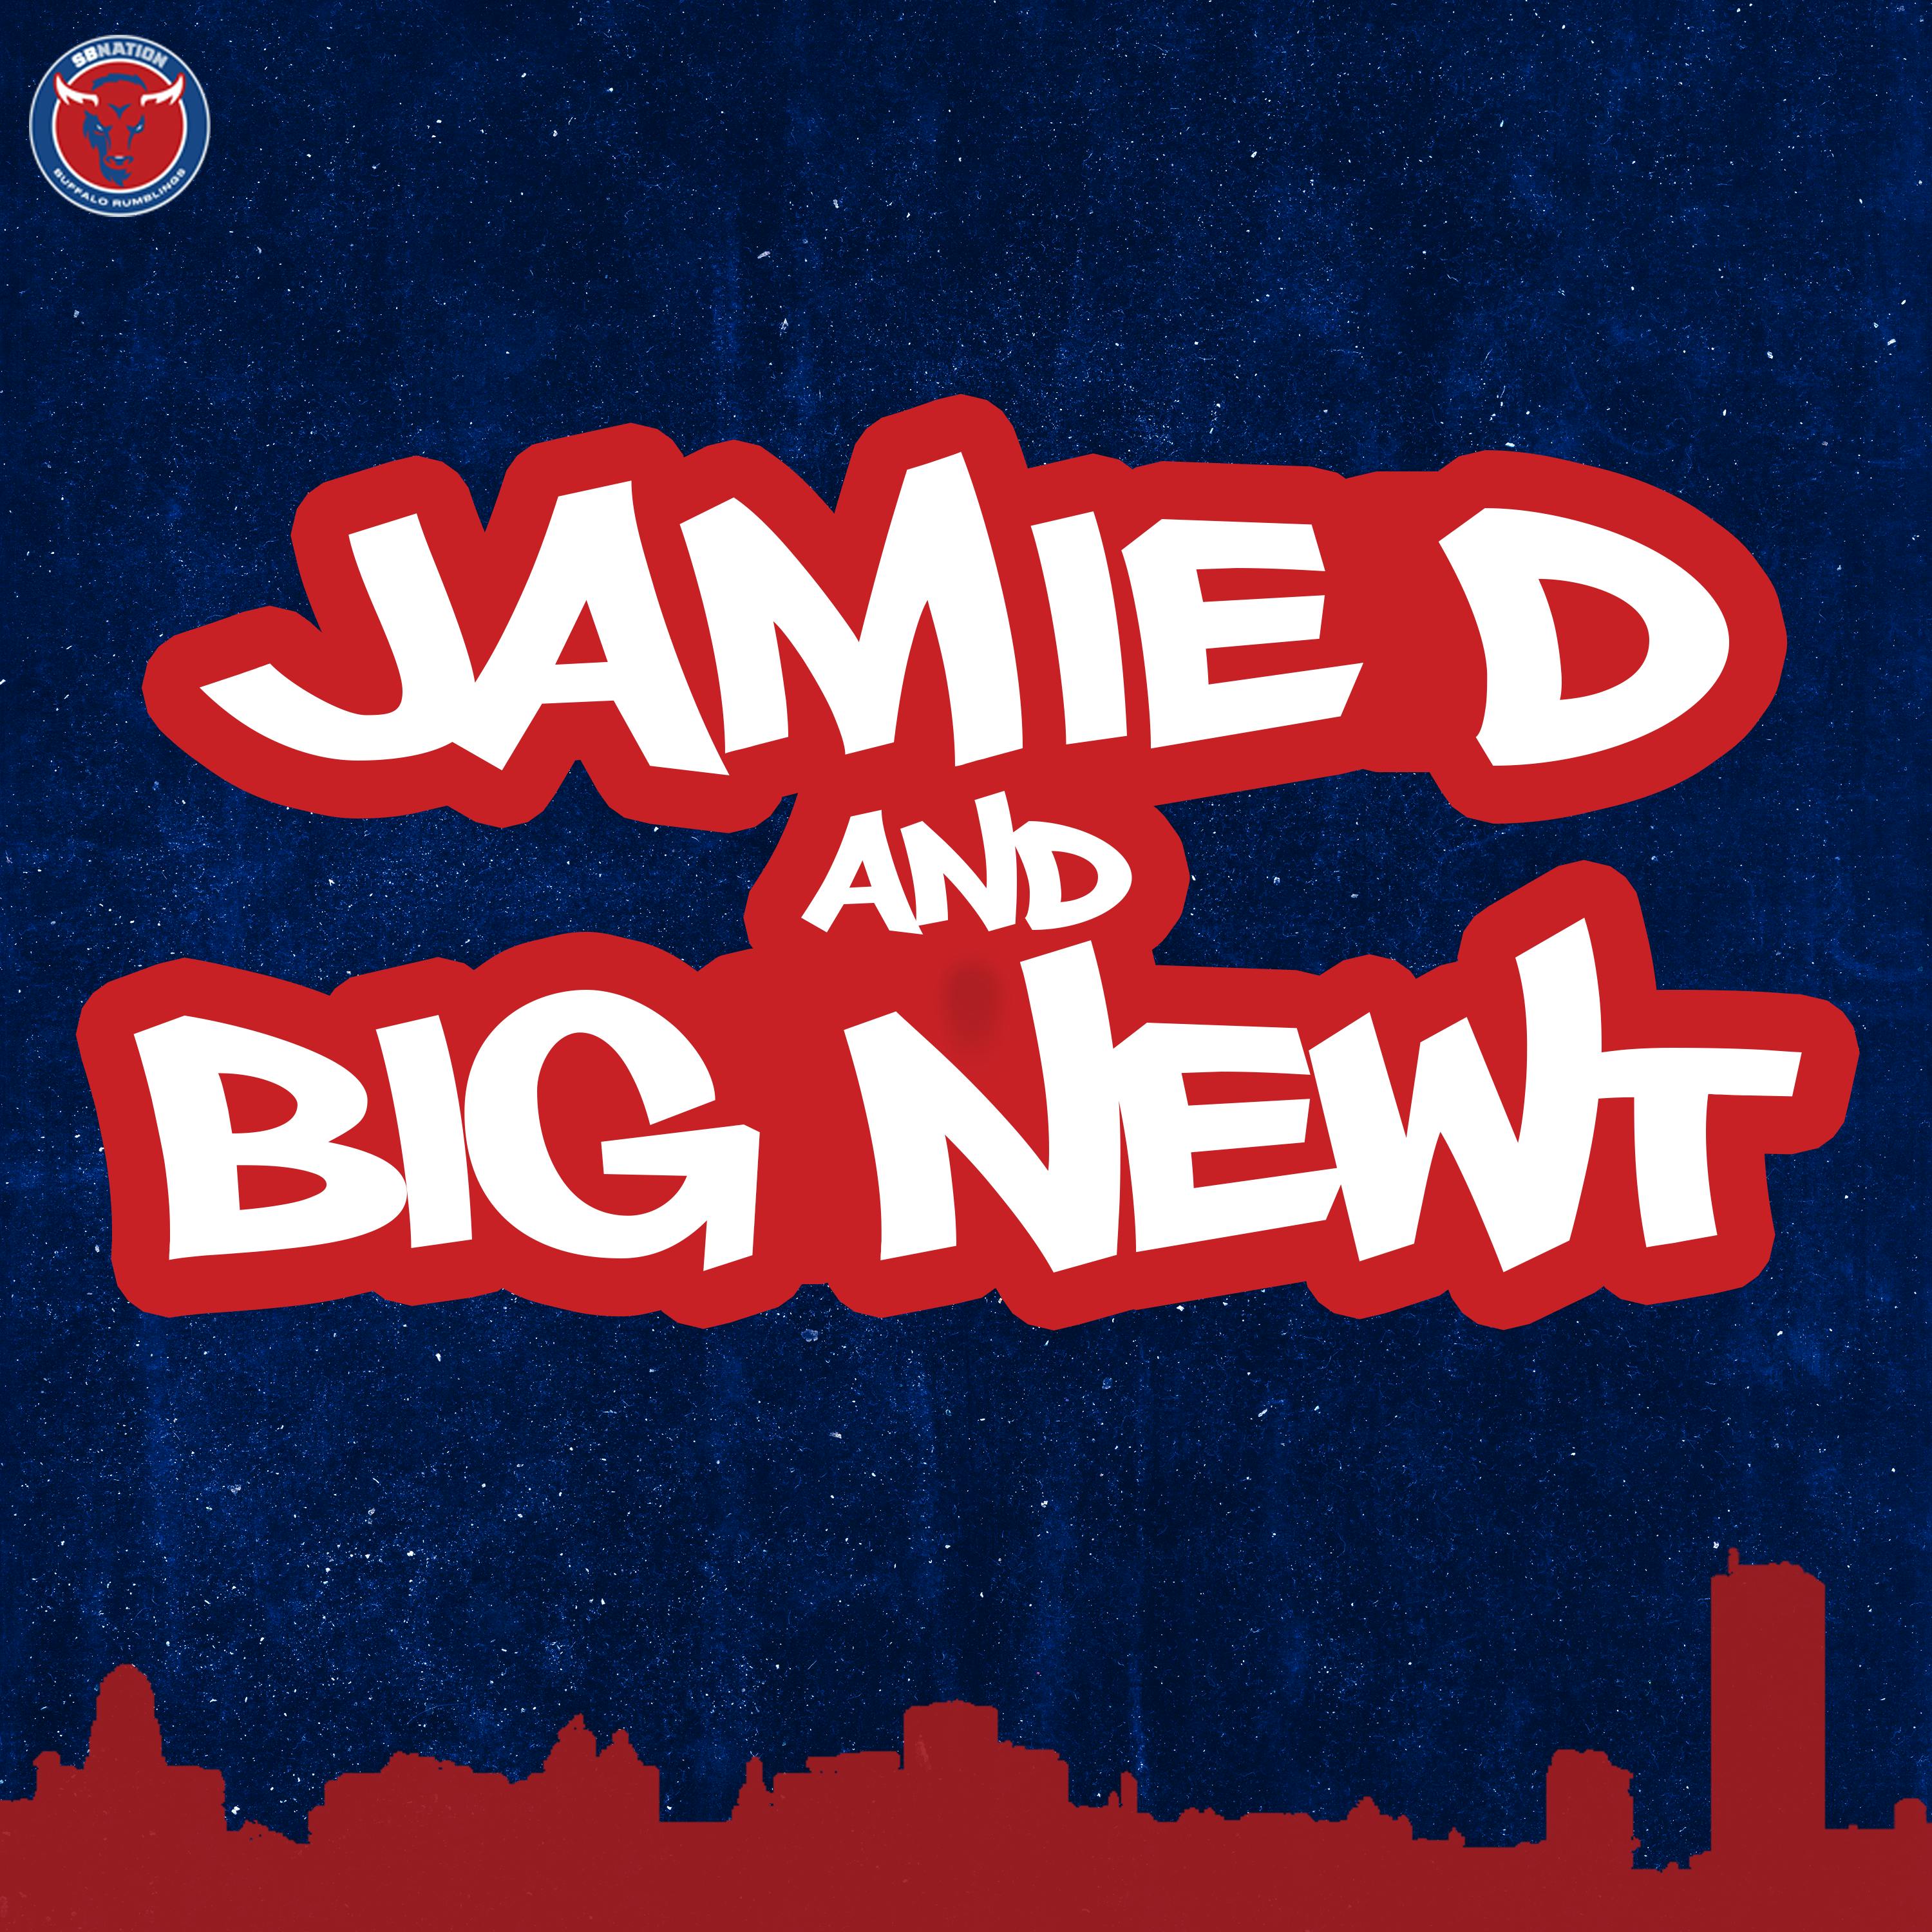 Jamie D & Big Newt: Bills & Blues Brothers